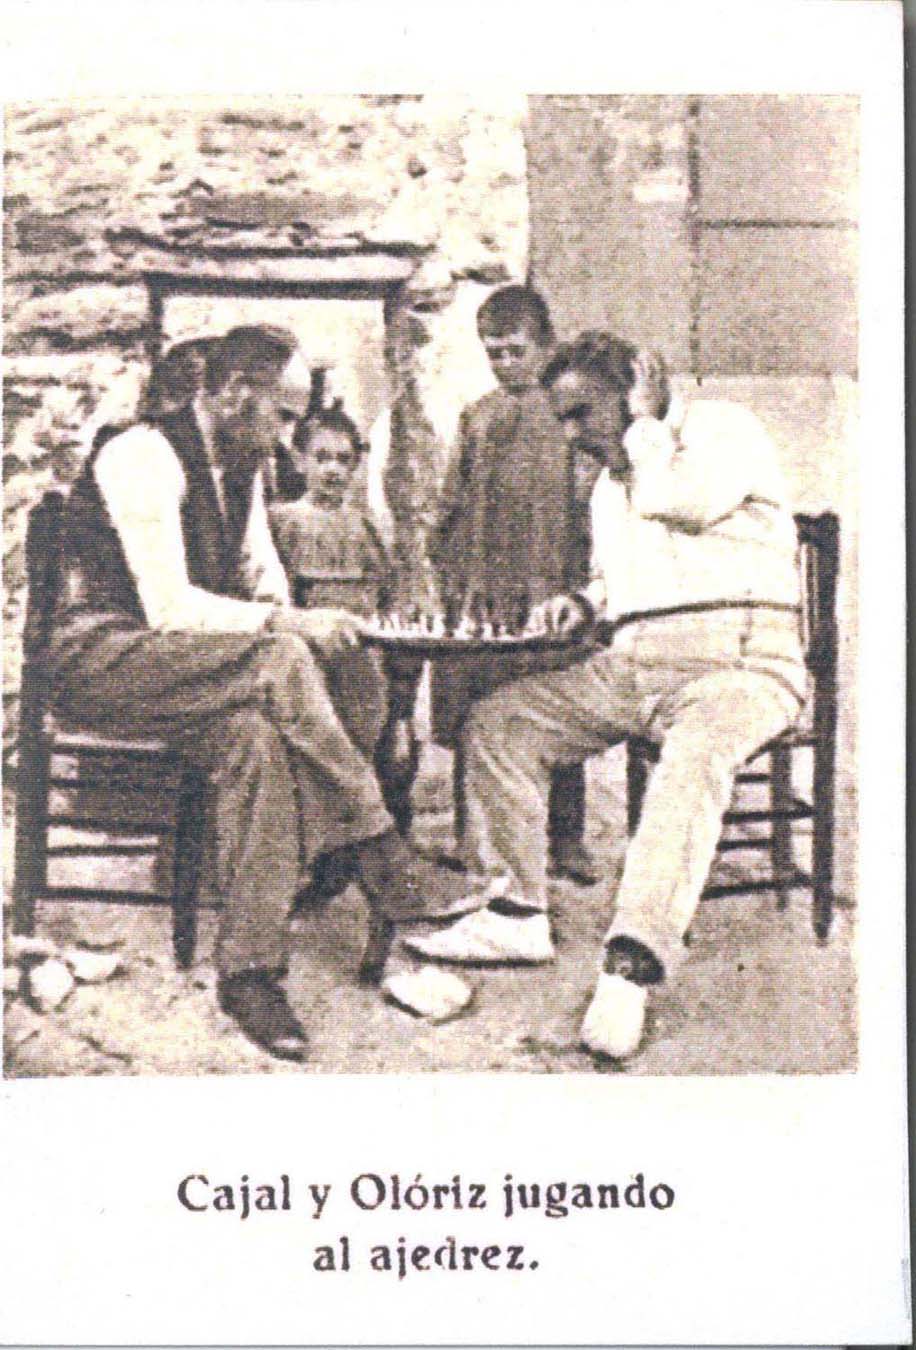 Cajal y Olóriz jugando al ajedrez